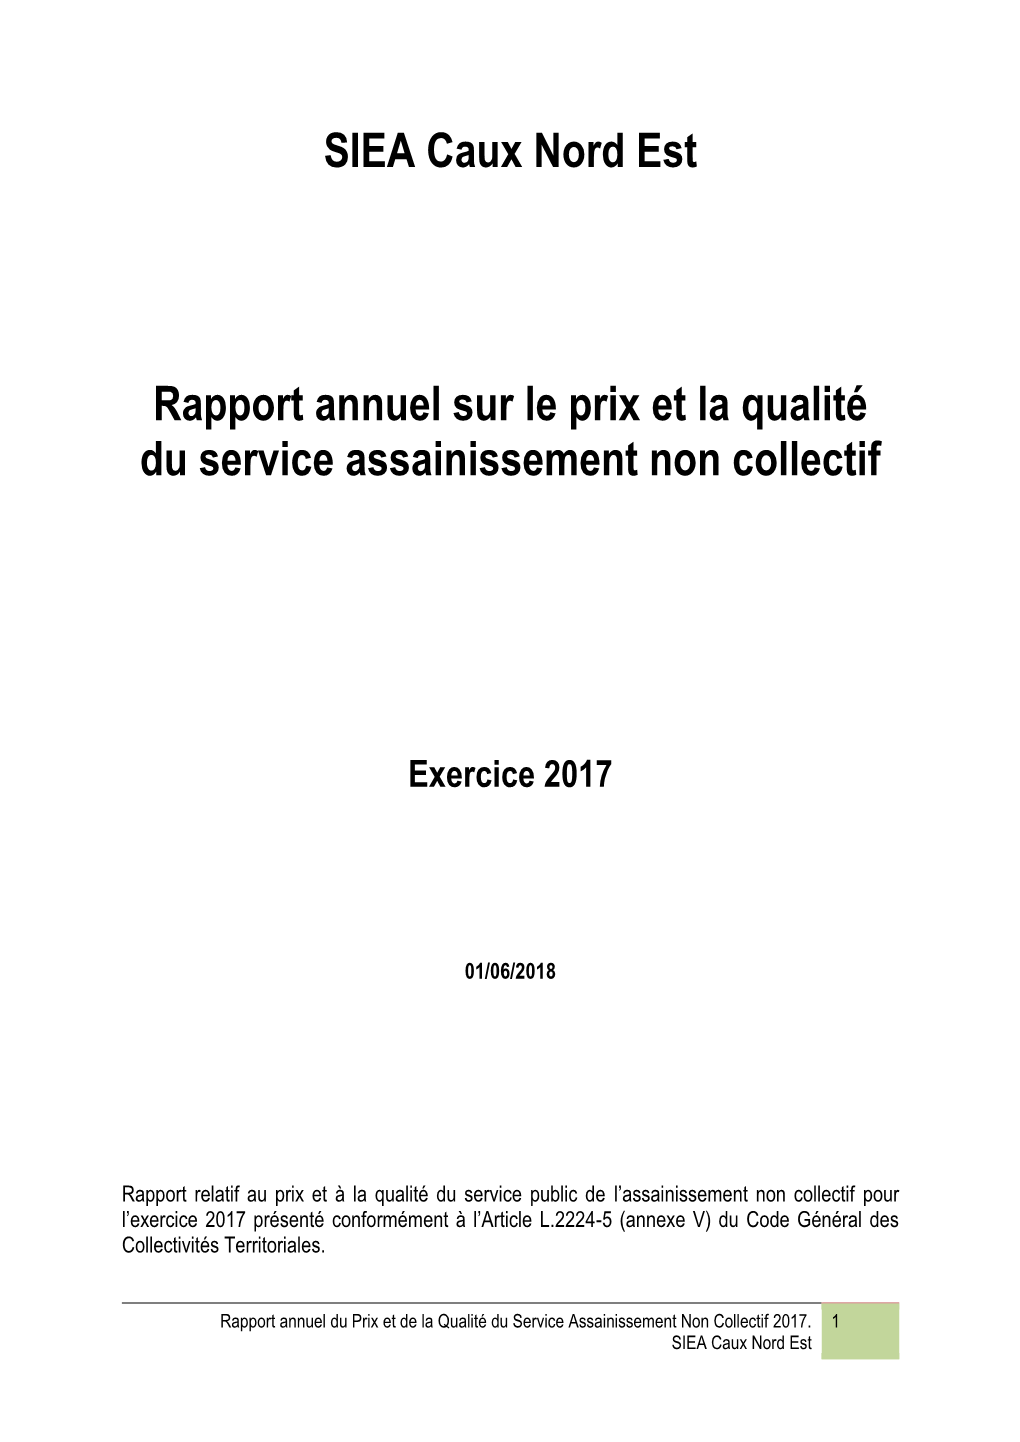 SIEA Caux Nord Est Rapport Annuel Sur Le Prix Et La Qualité Du Service